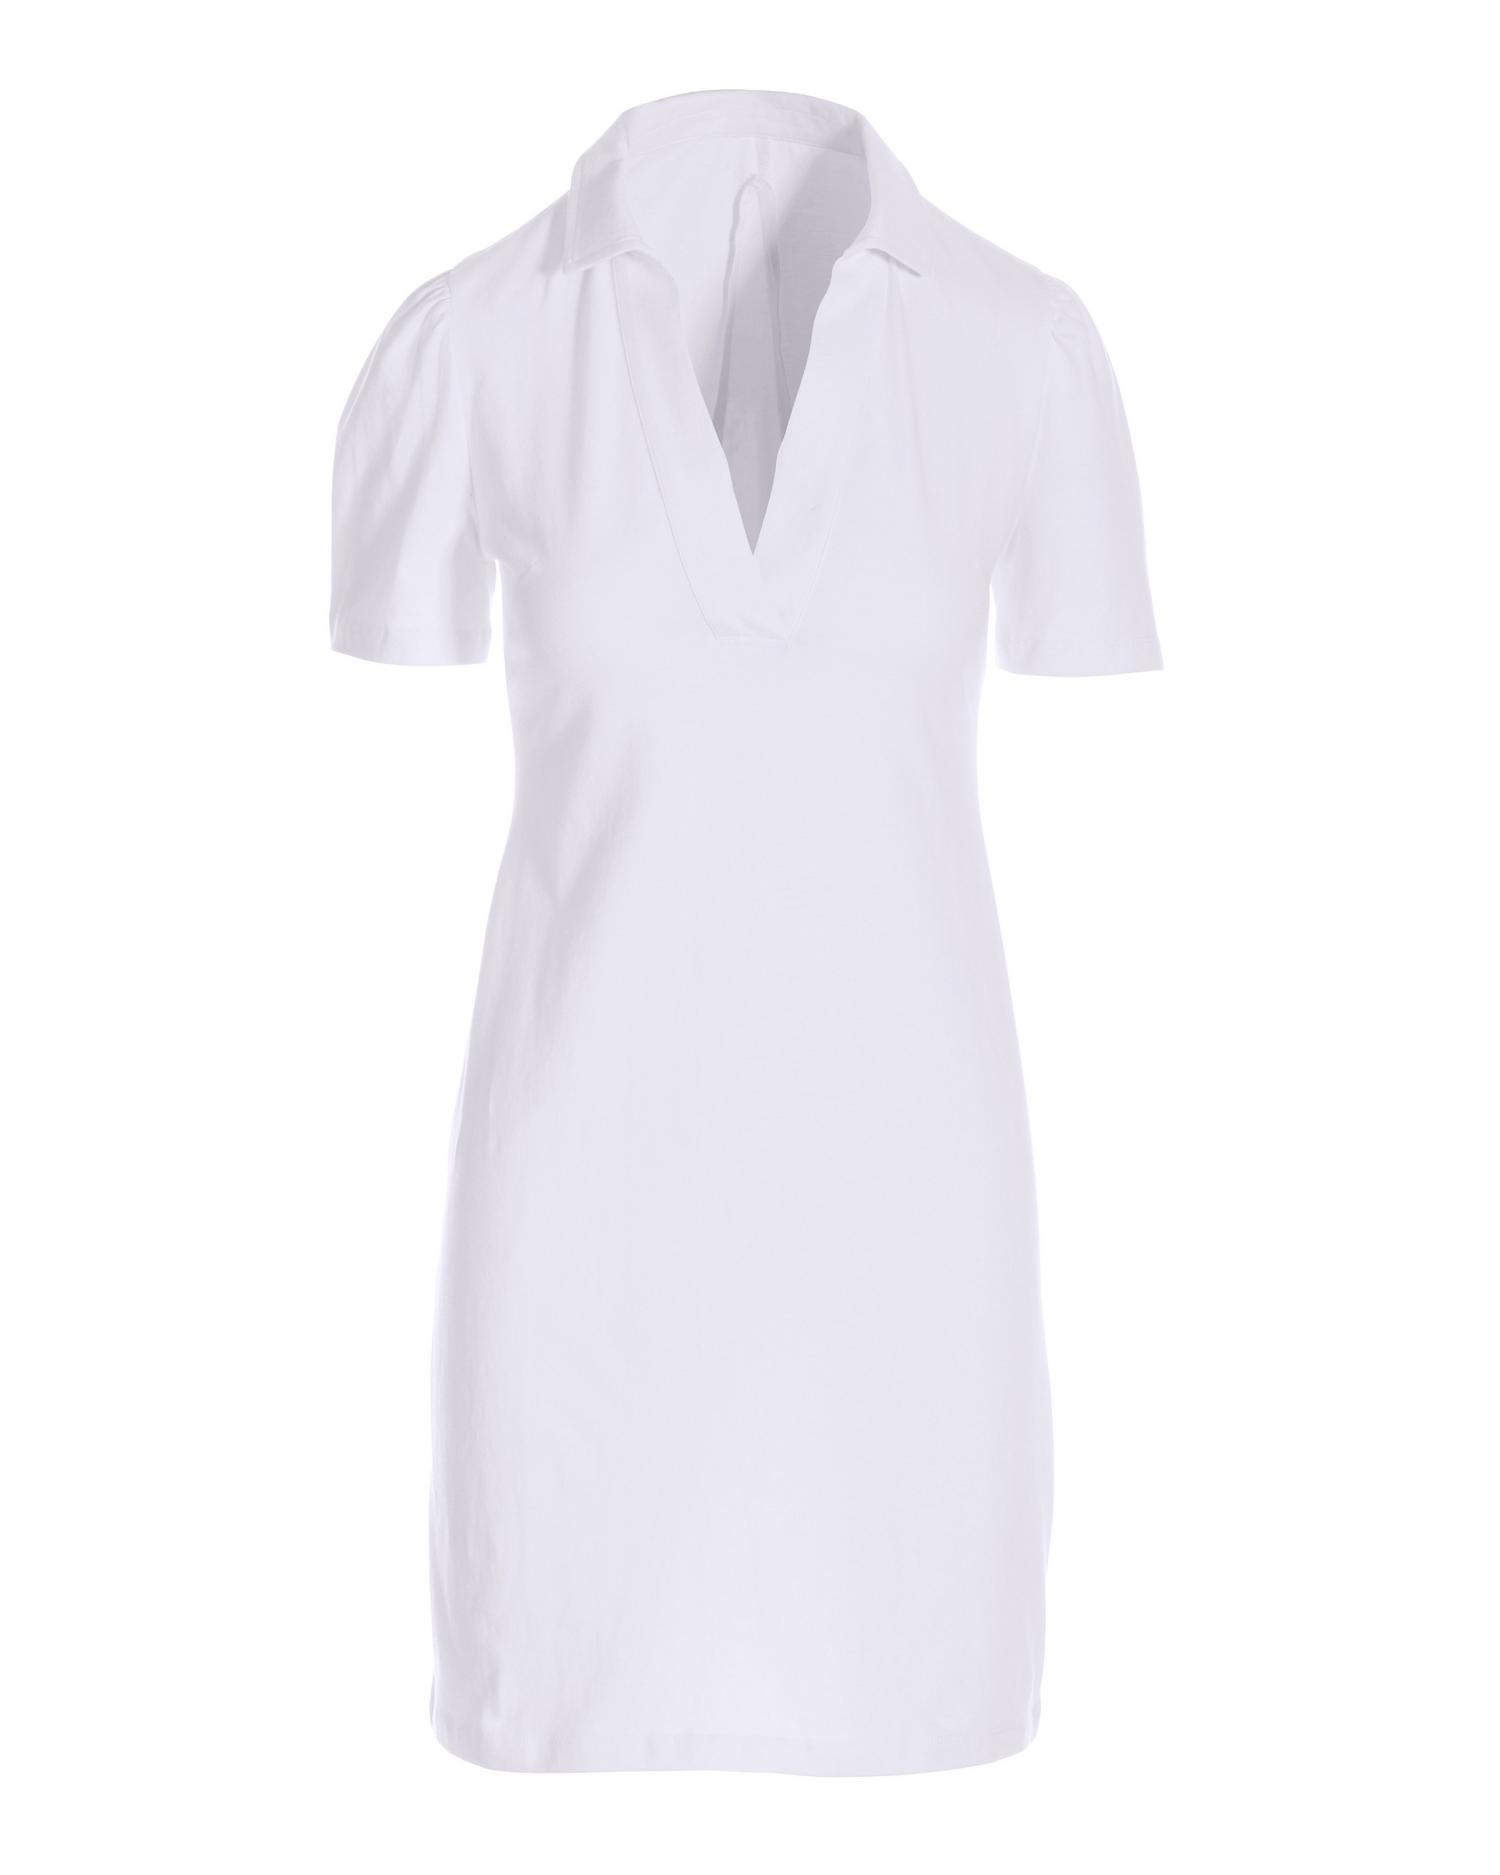 Boston Proper - White - Casual Polo Dress - Small